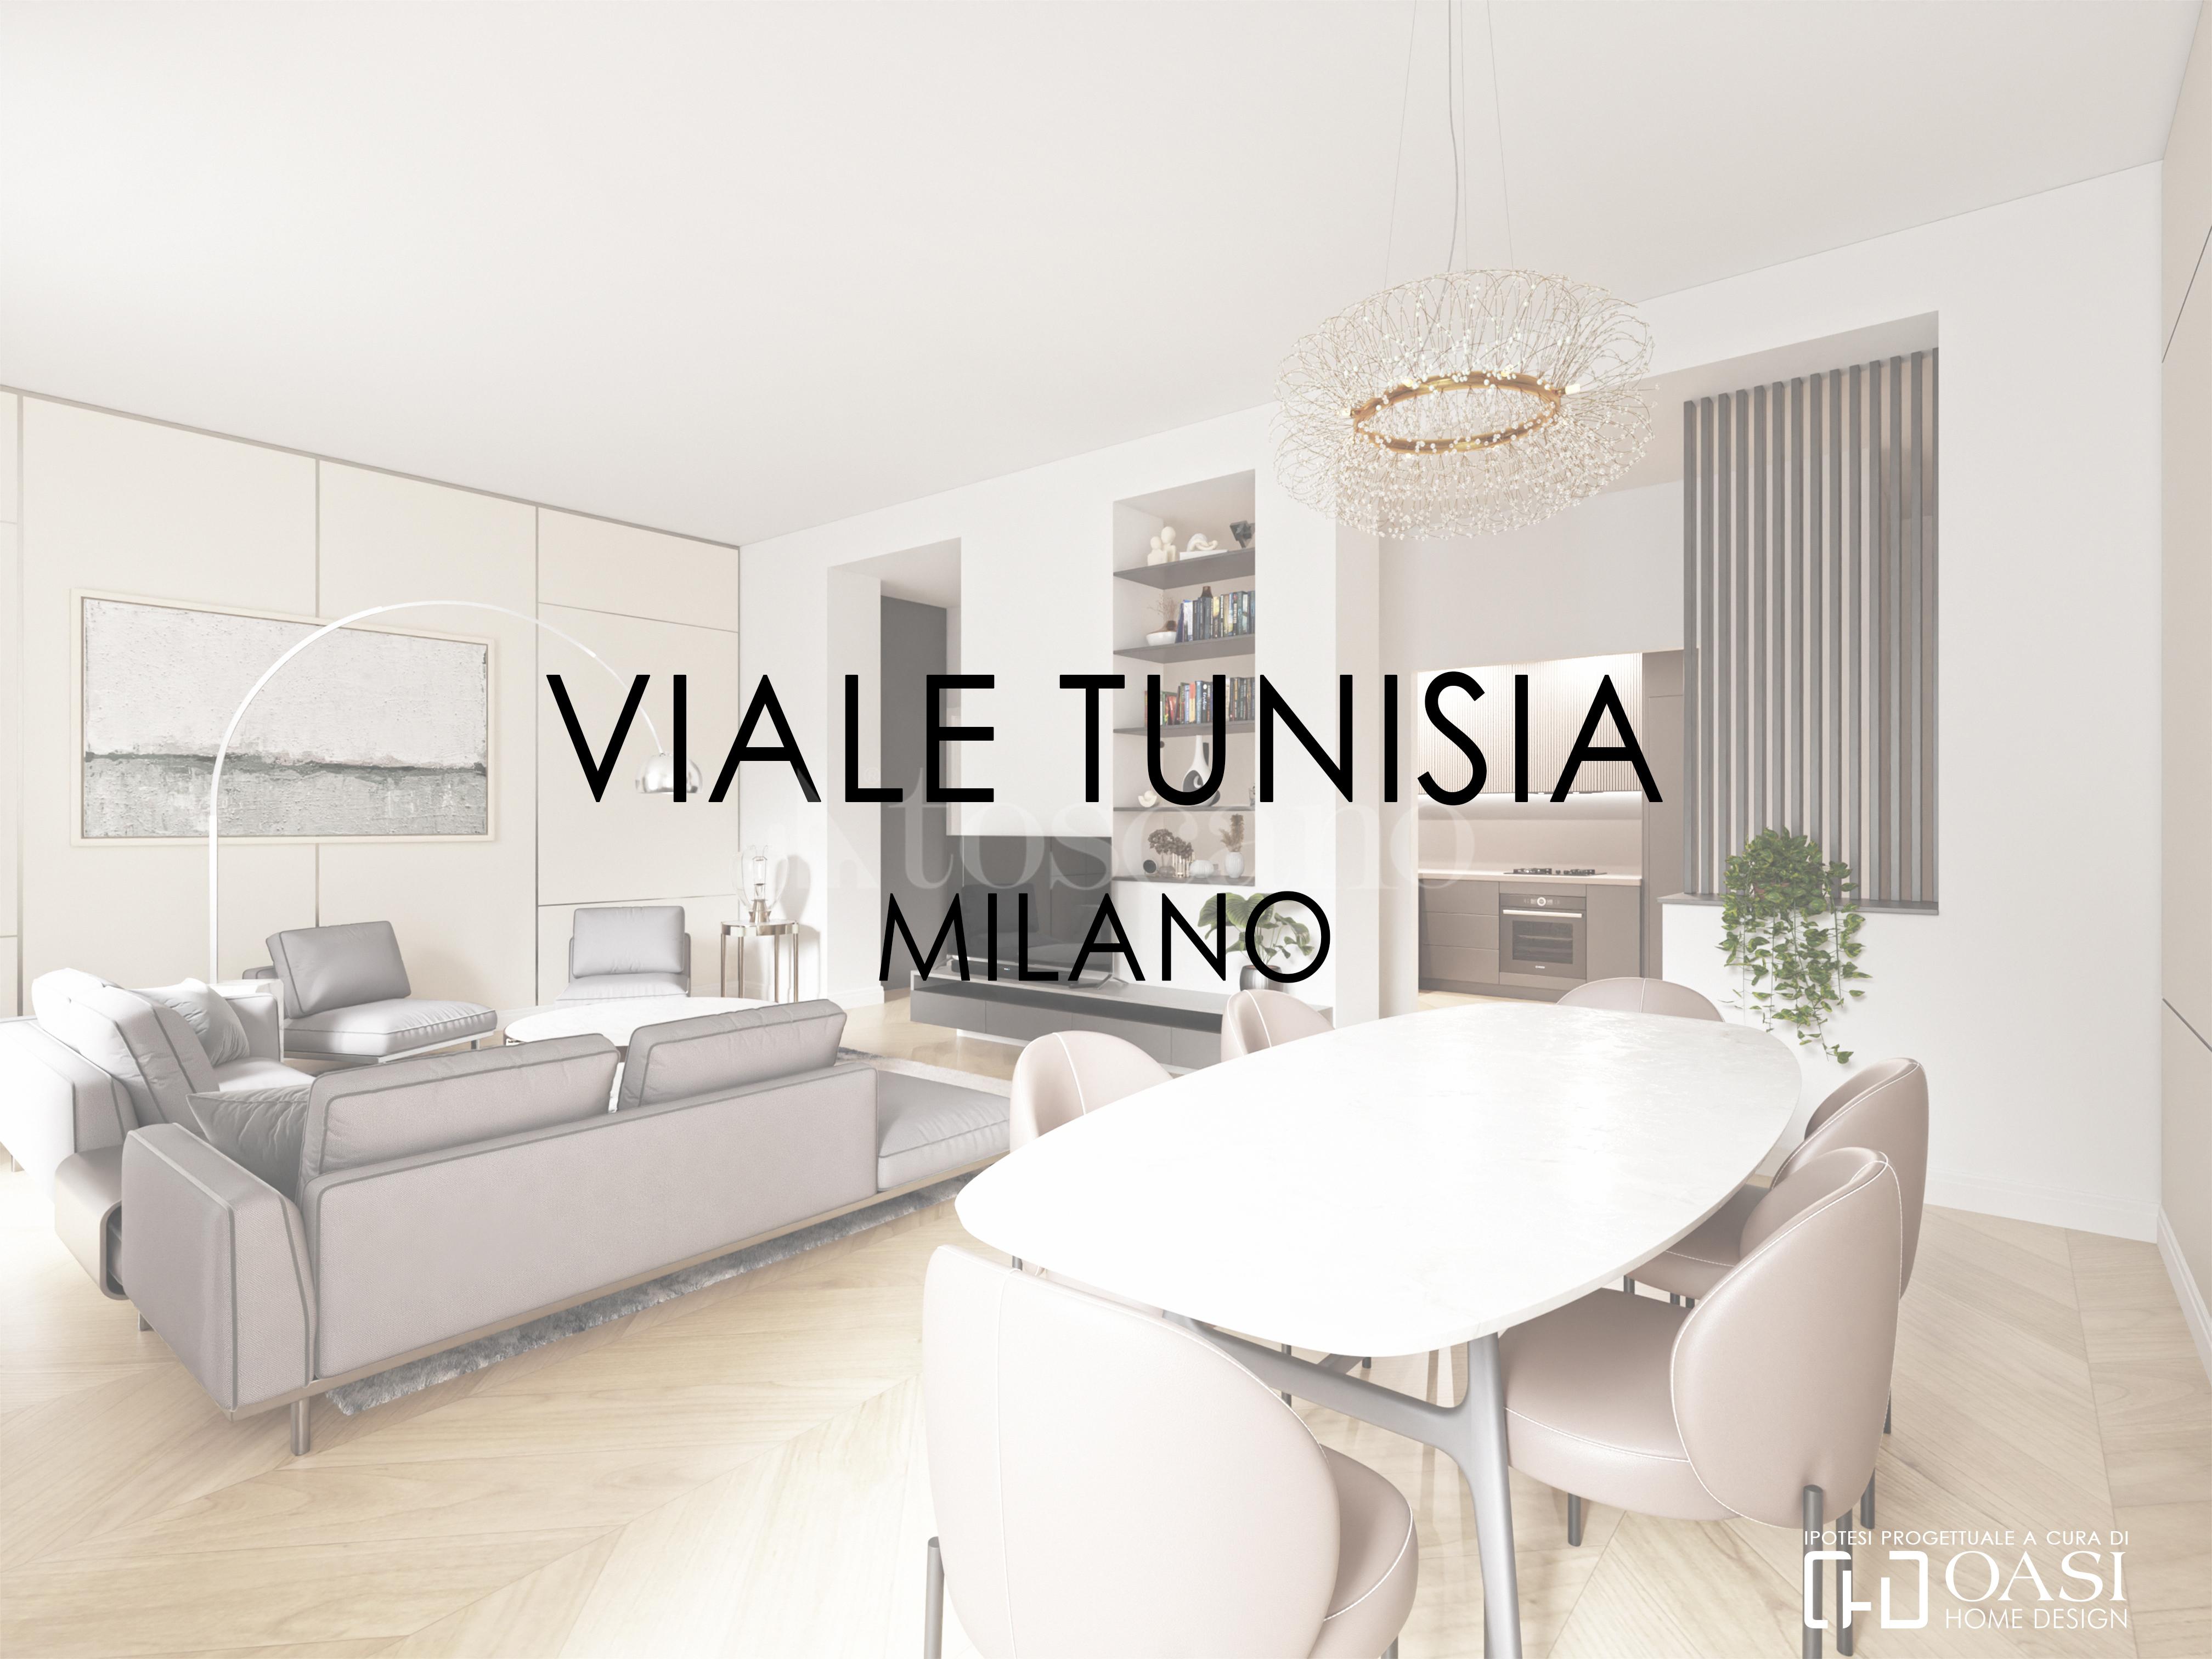 Casa a Milano in Viale Tunisia, Piazza Repubblica